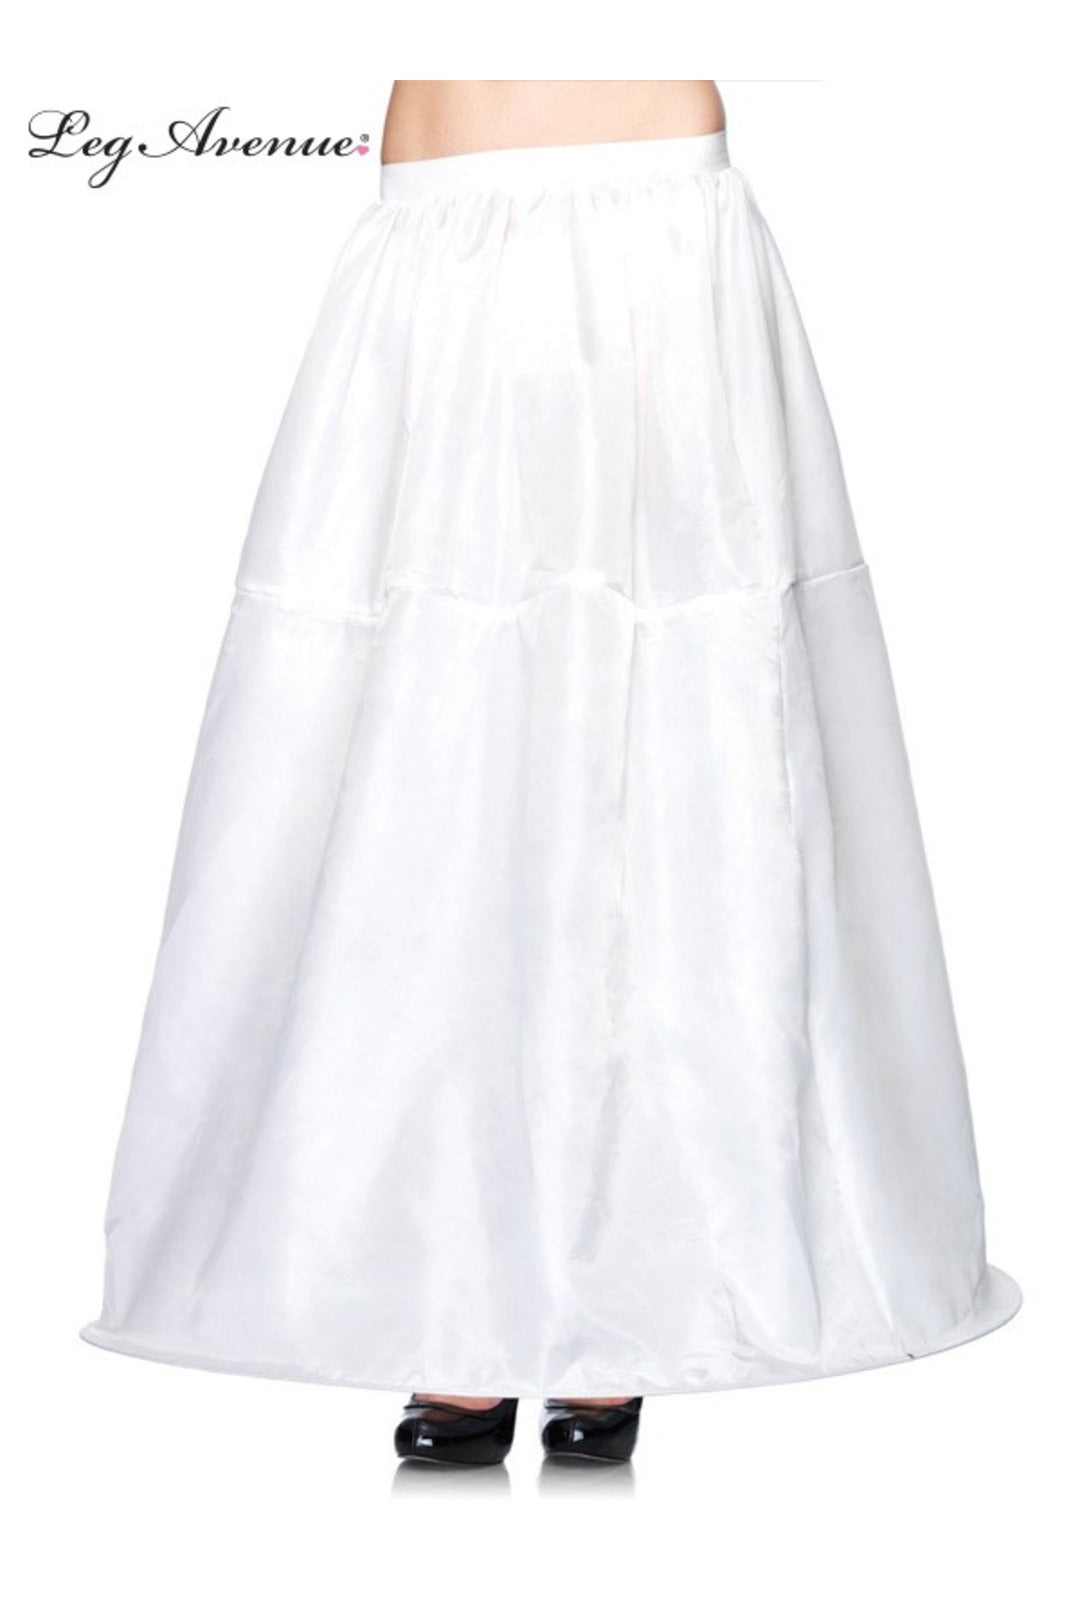 White Long Hoop Skirt